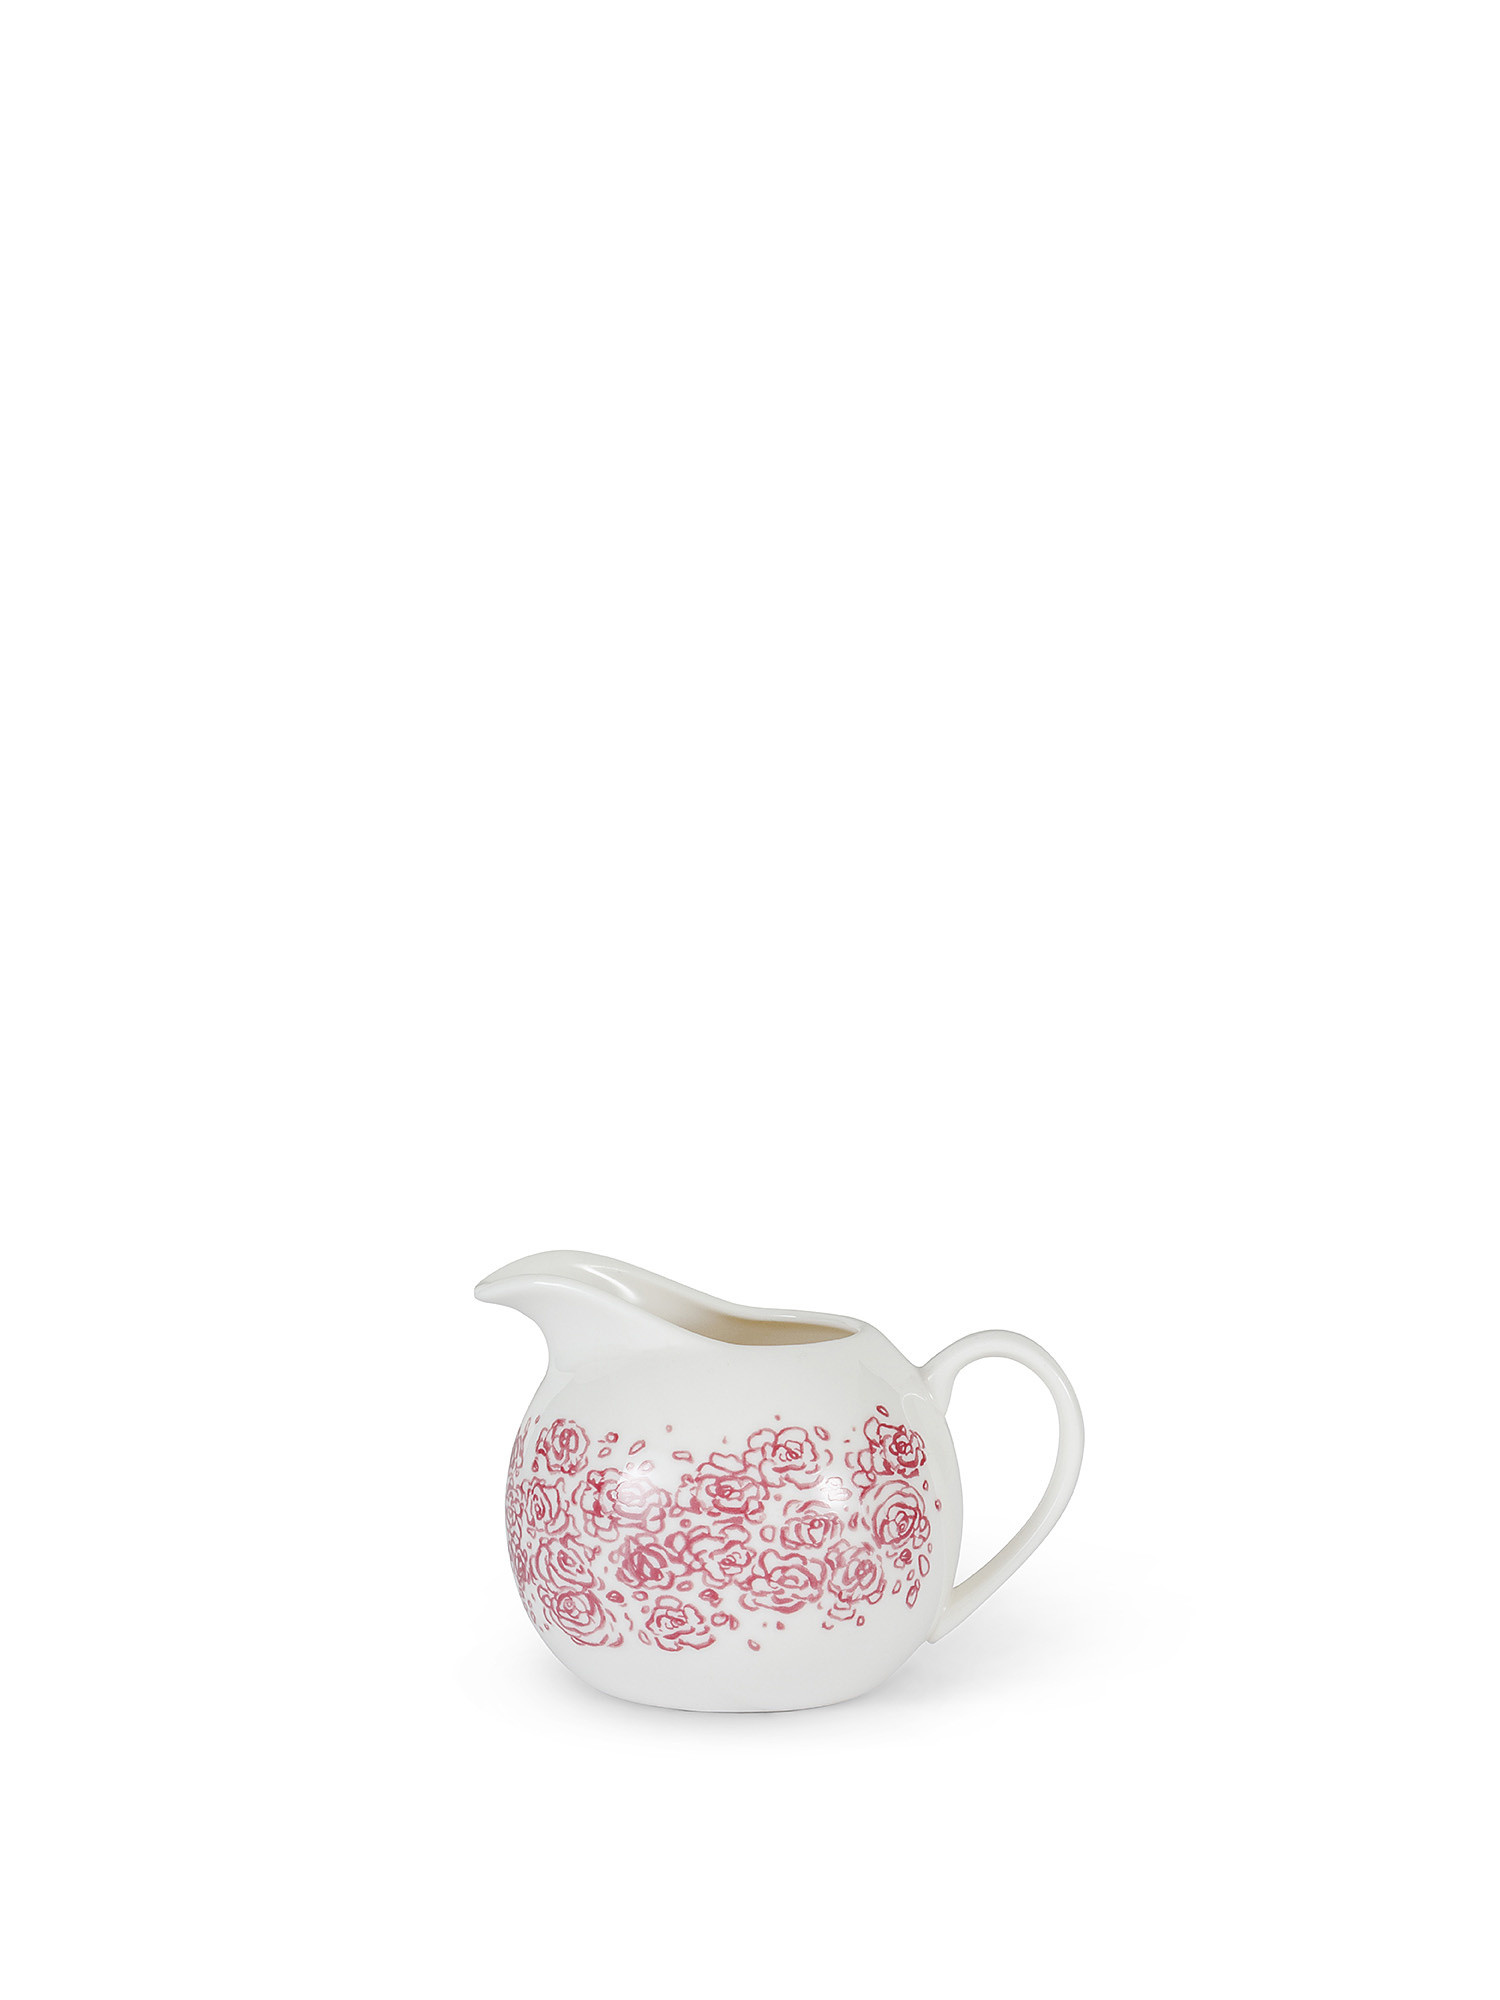 New bone china milk jug with roses decoration, White, large image number 0